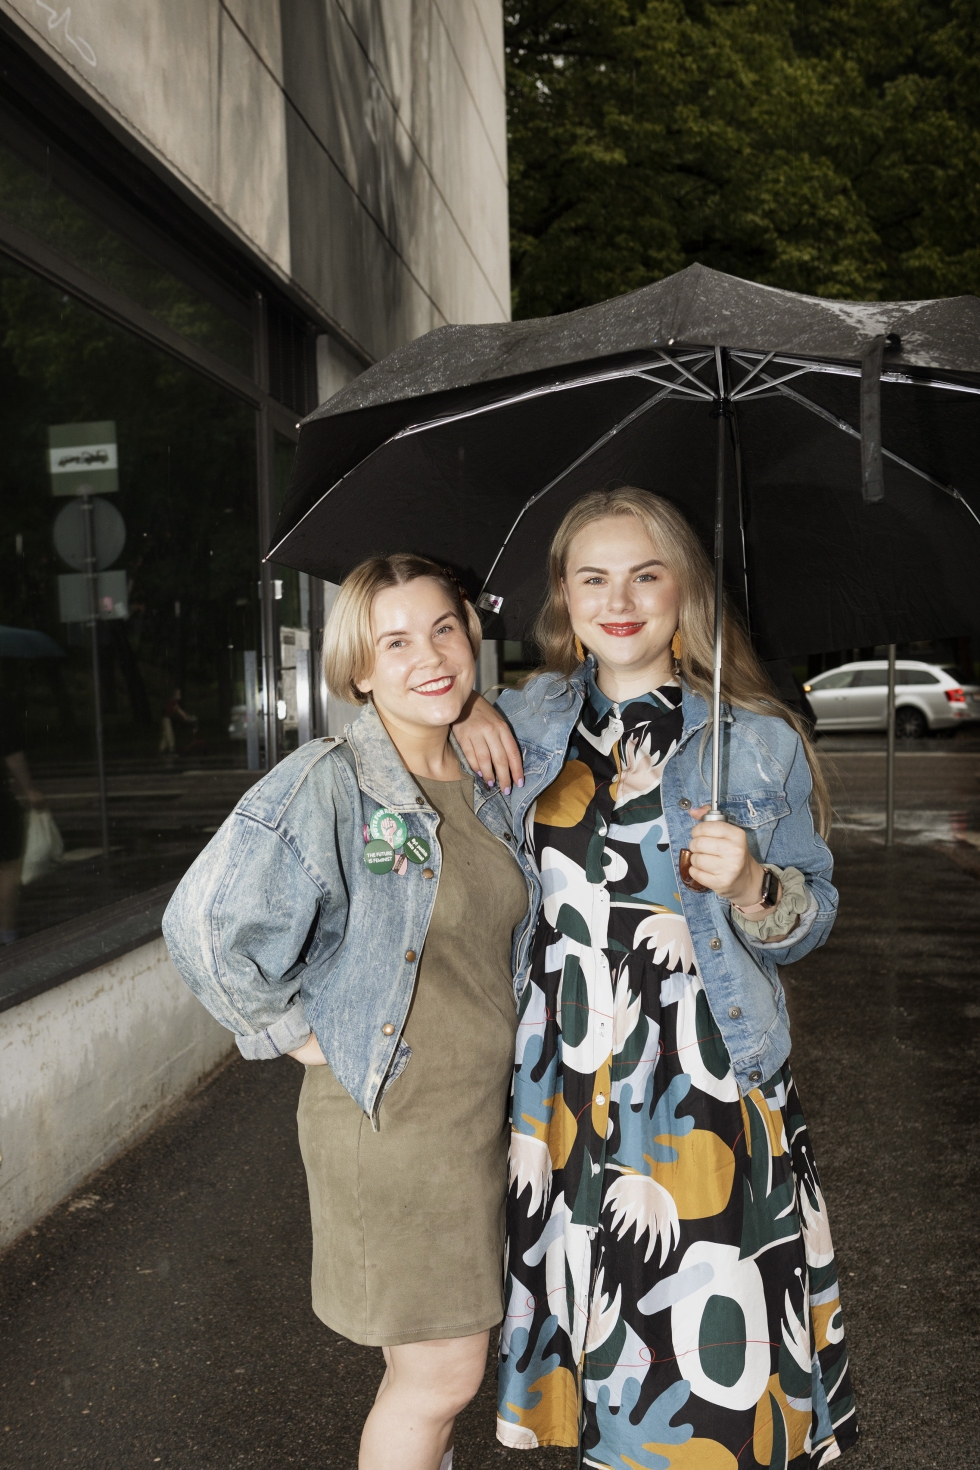 Darravapaan-someyhteisön perustajat Laura Wathén ja Katri Ylinen haluavat päivittää kuvastoa, joka liitetään alkoholiongelmaisiin. Yhtä hyvin se voi olla myös työssäkäyvä nuori nainen.